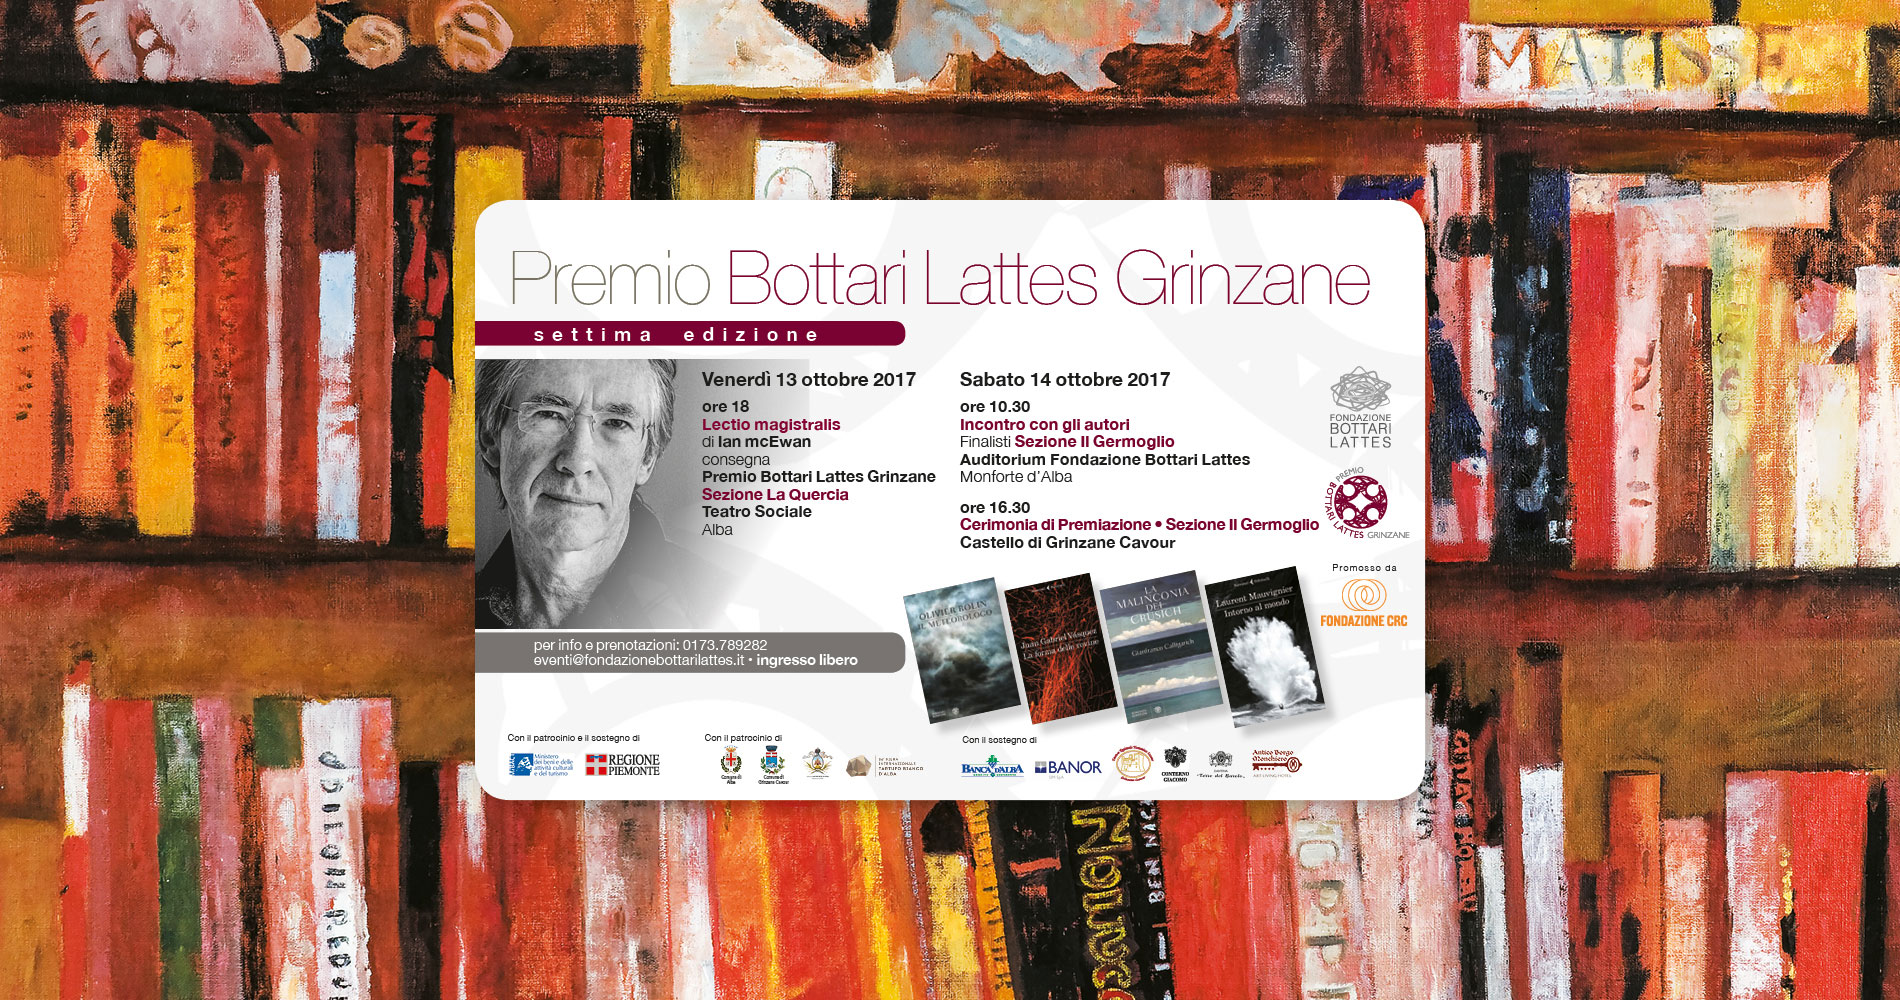 Le giornate conclusive del Premio Bottari Lattes Grinzane